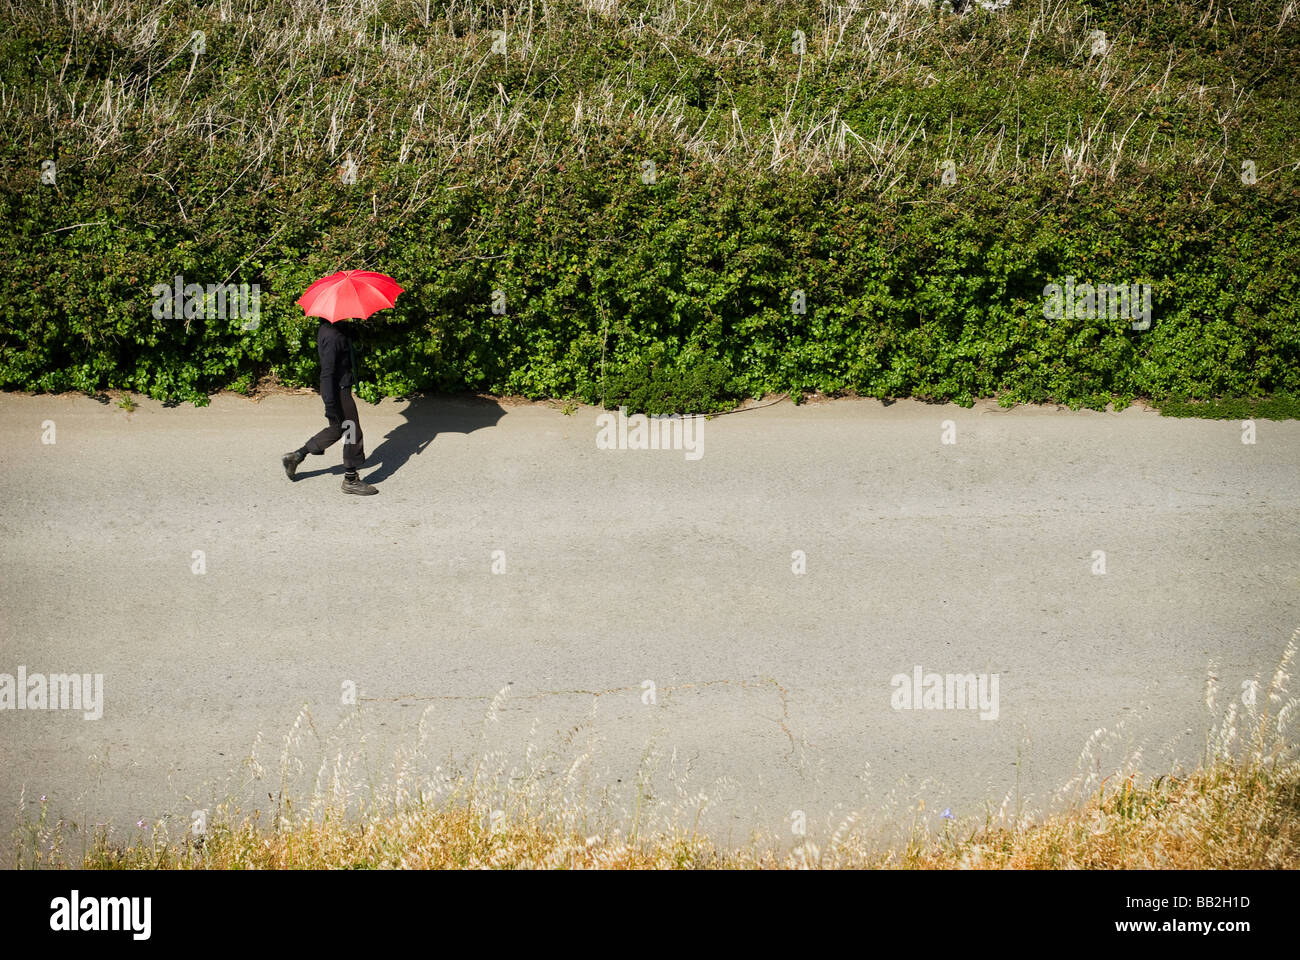 Personne marchant avec parapluie rouge Banque D'Images